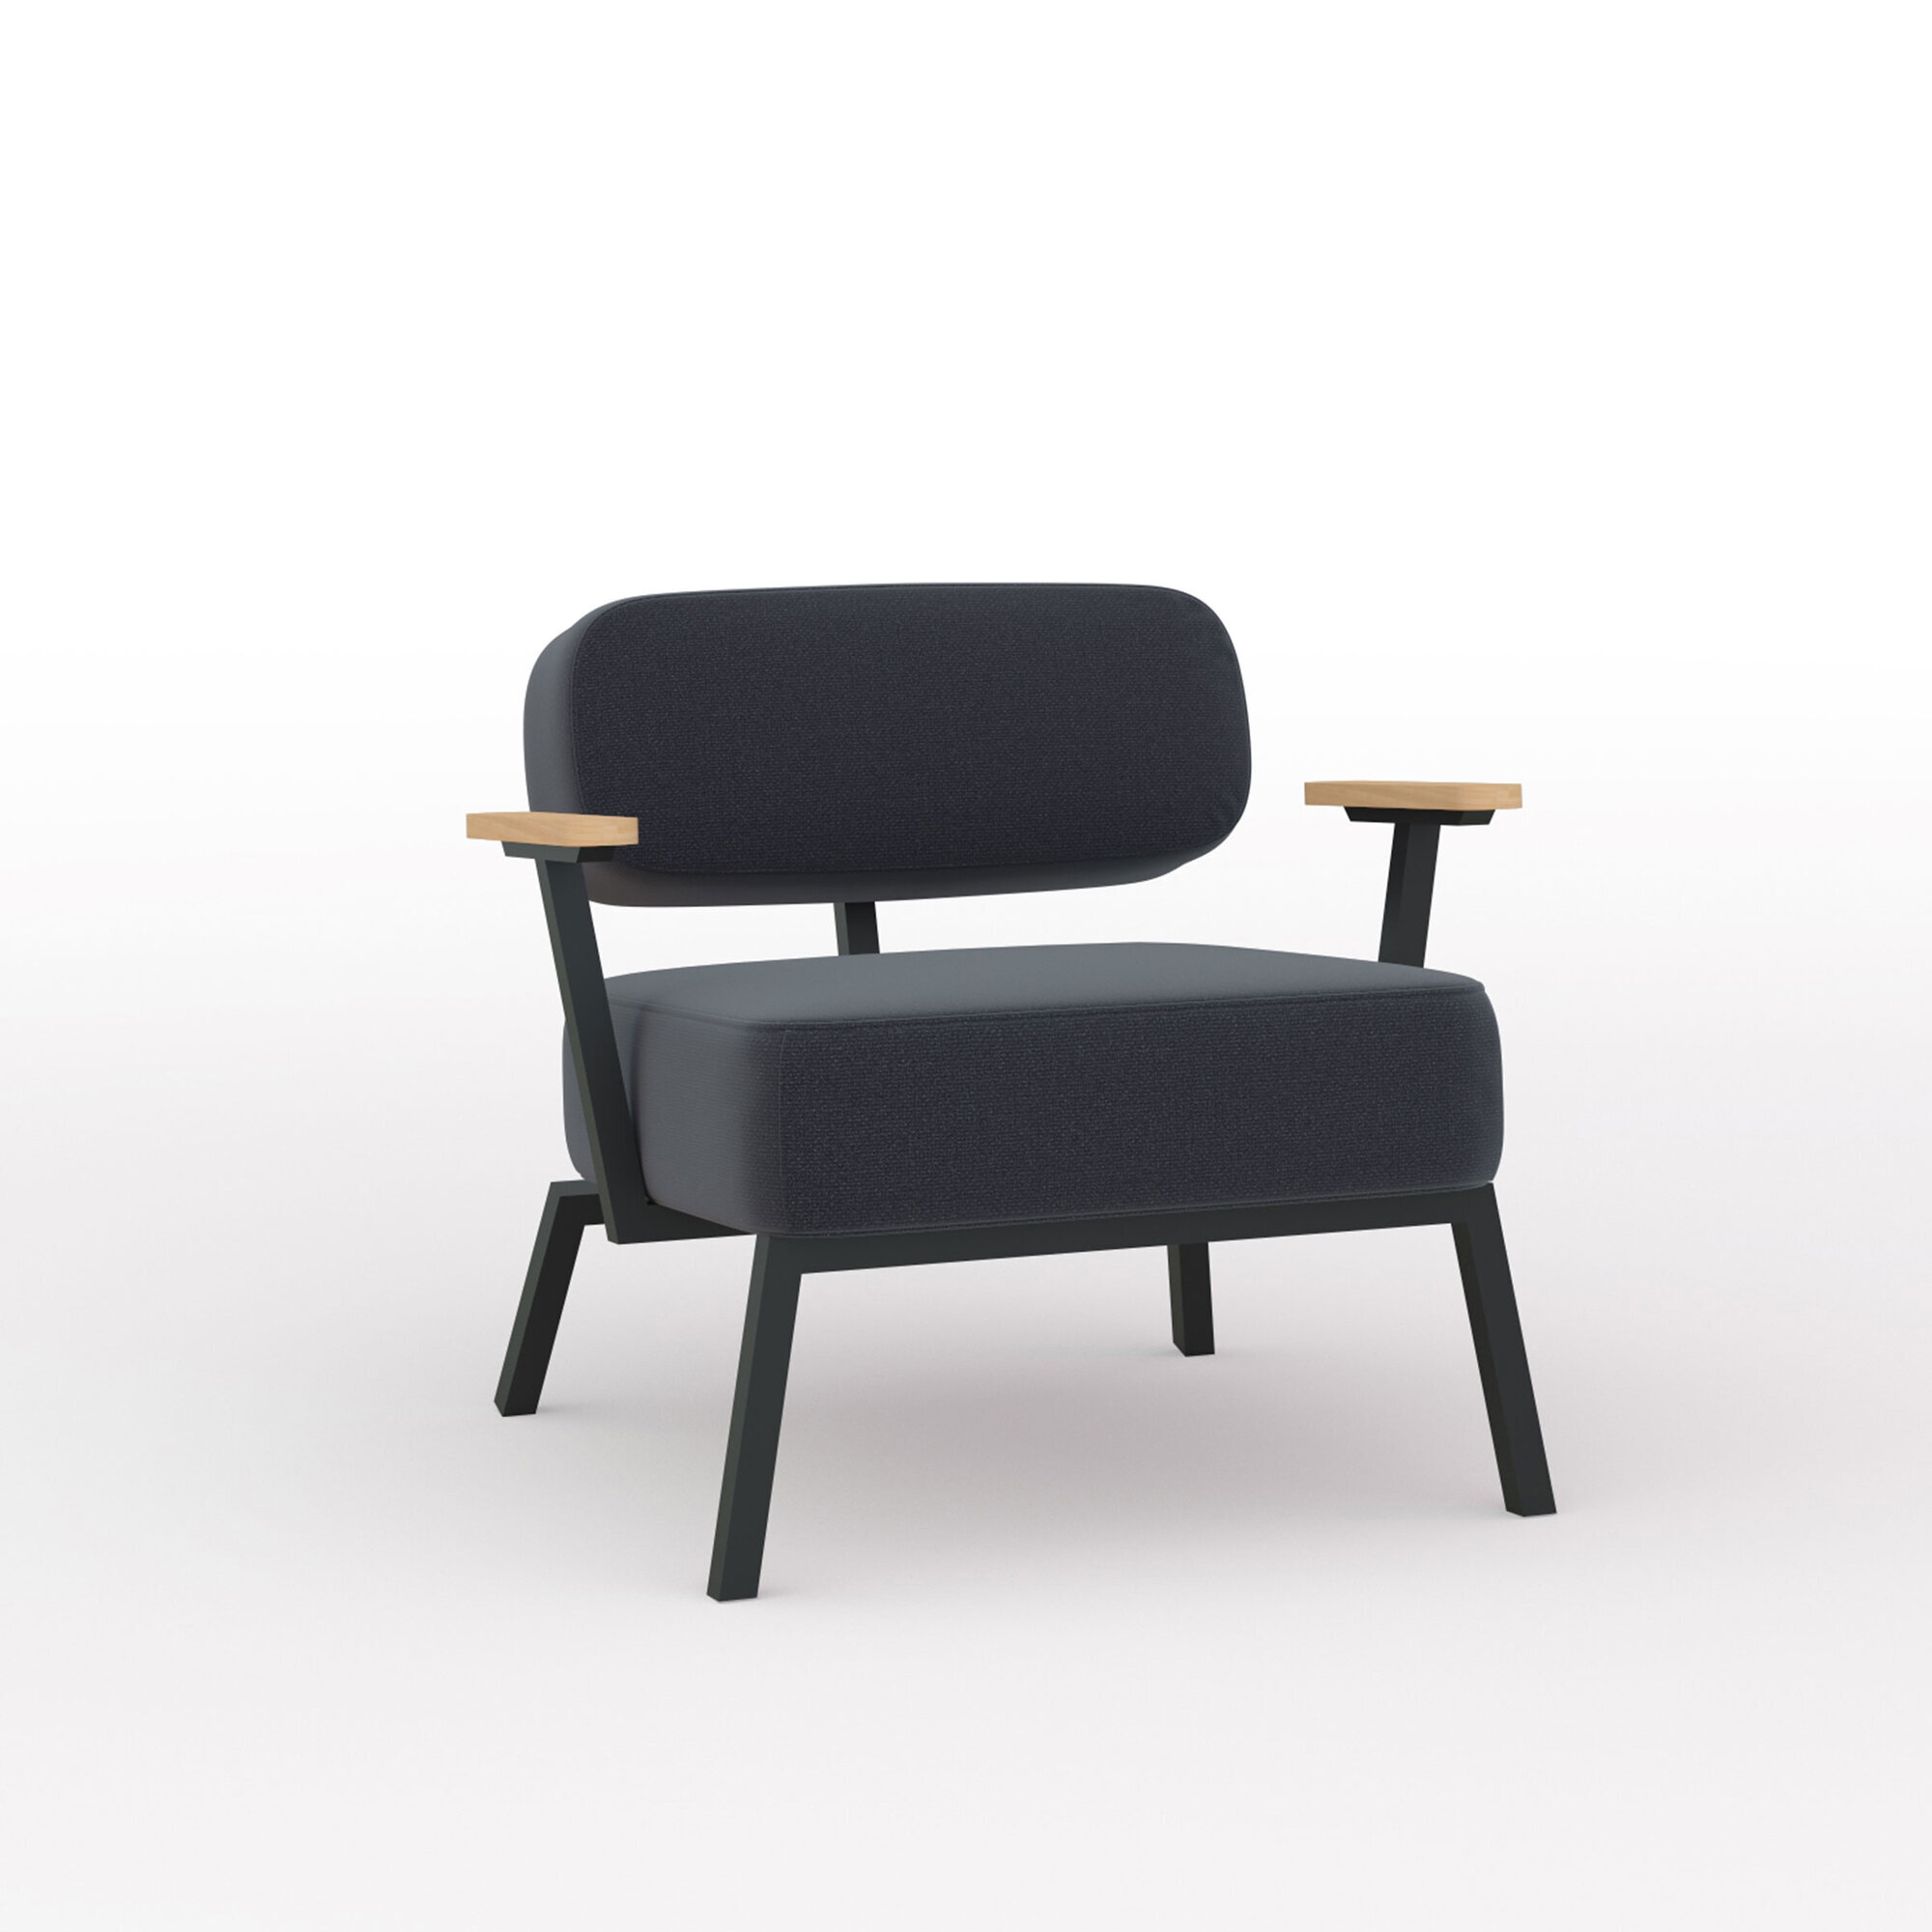 Design modern sofa | Ode lounge chair 1 seater with armrest Black hallingdal65 190 | Studio HENK| Listing_image